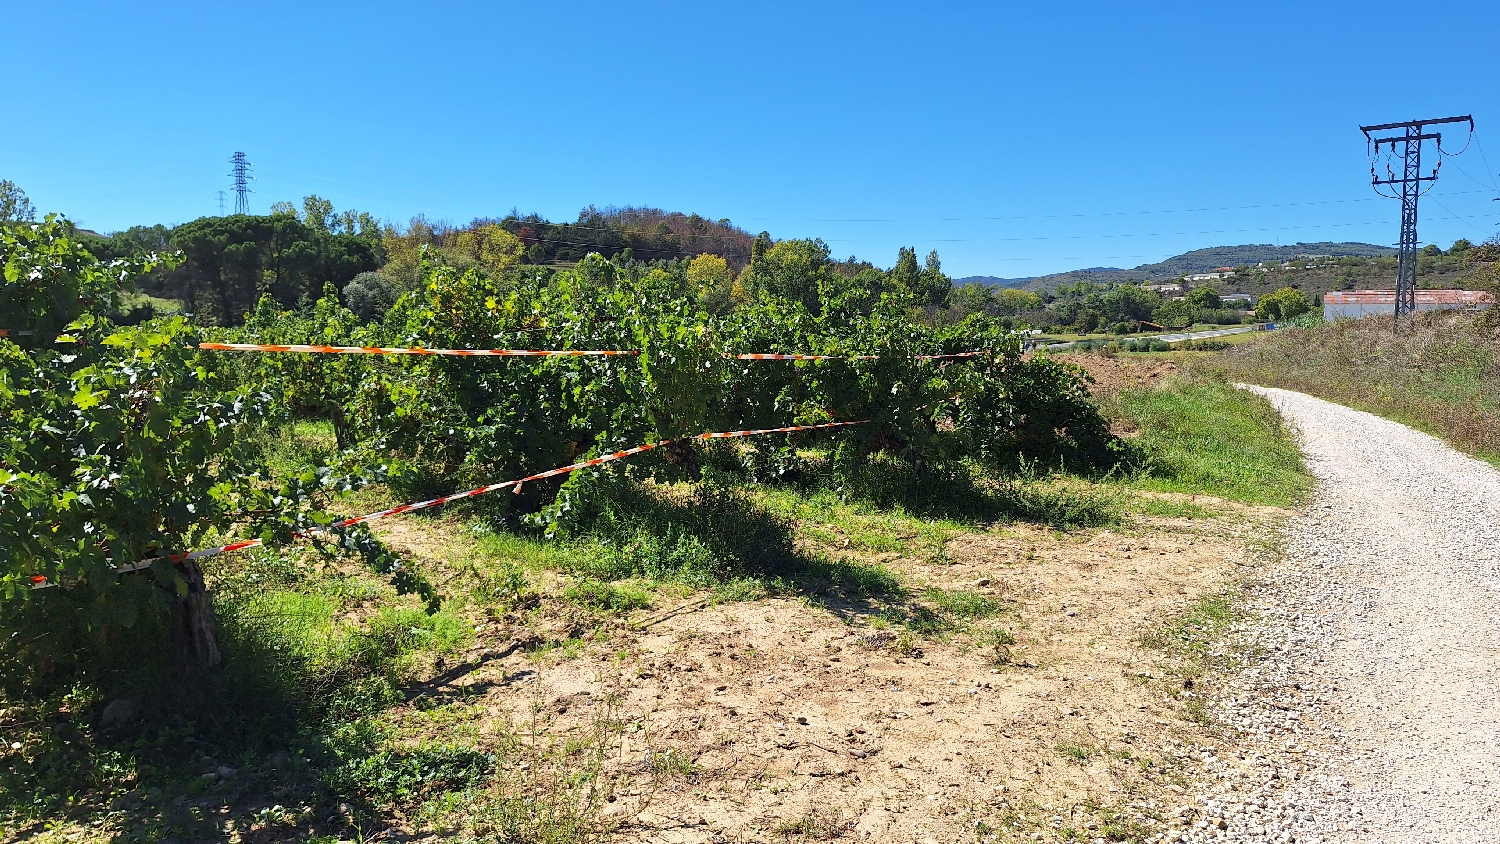 El Camino, Aragon út, Francia út, itt már piros-fehér szalaggal kerítik el a szőlőültetvényeket